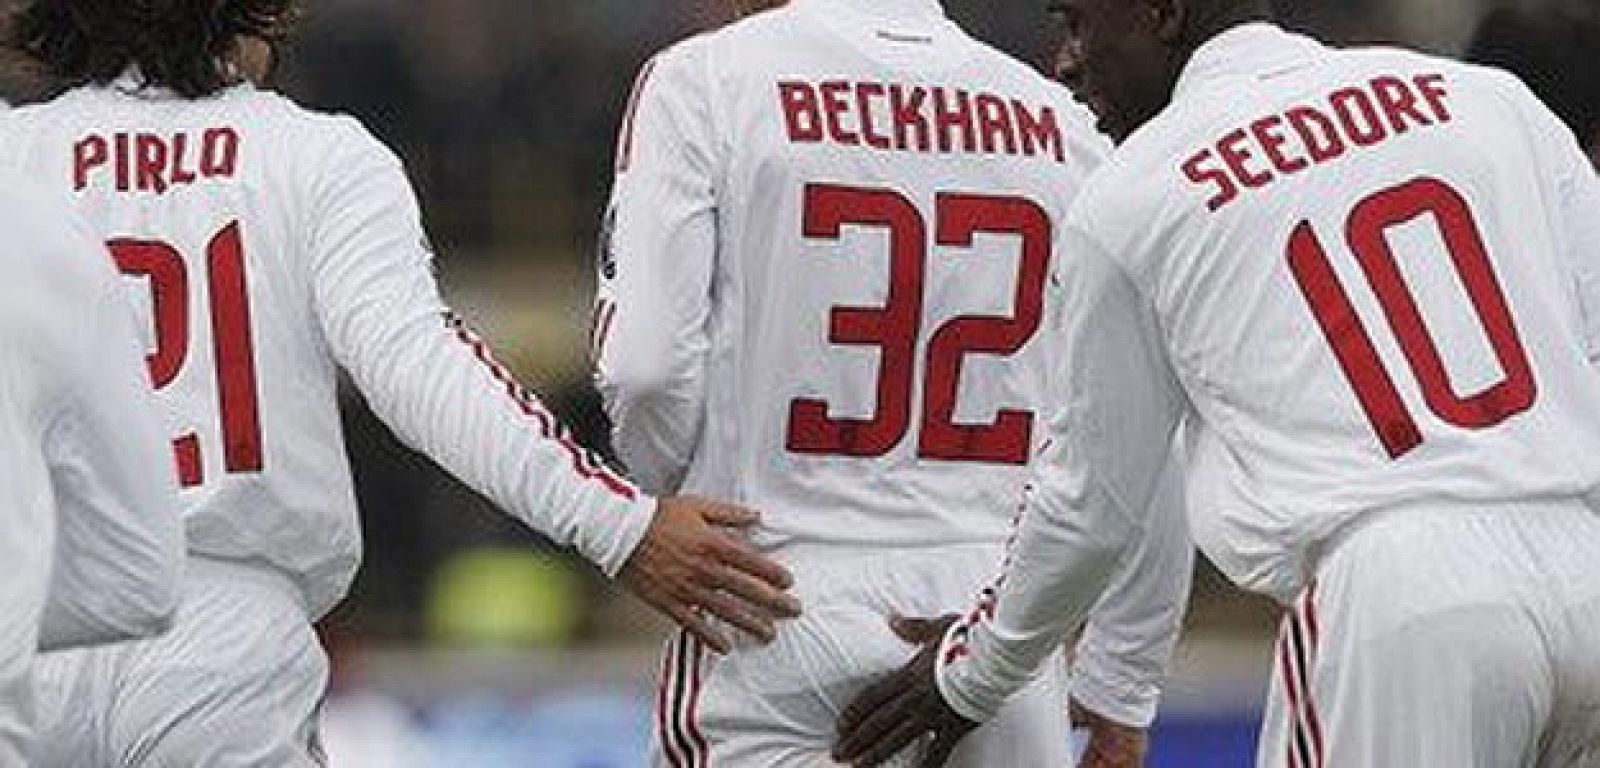 Los jugadores del Milan vieron en el trasero de Beckham a un 'búho de la suerte'